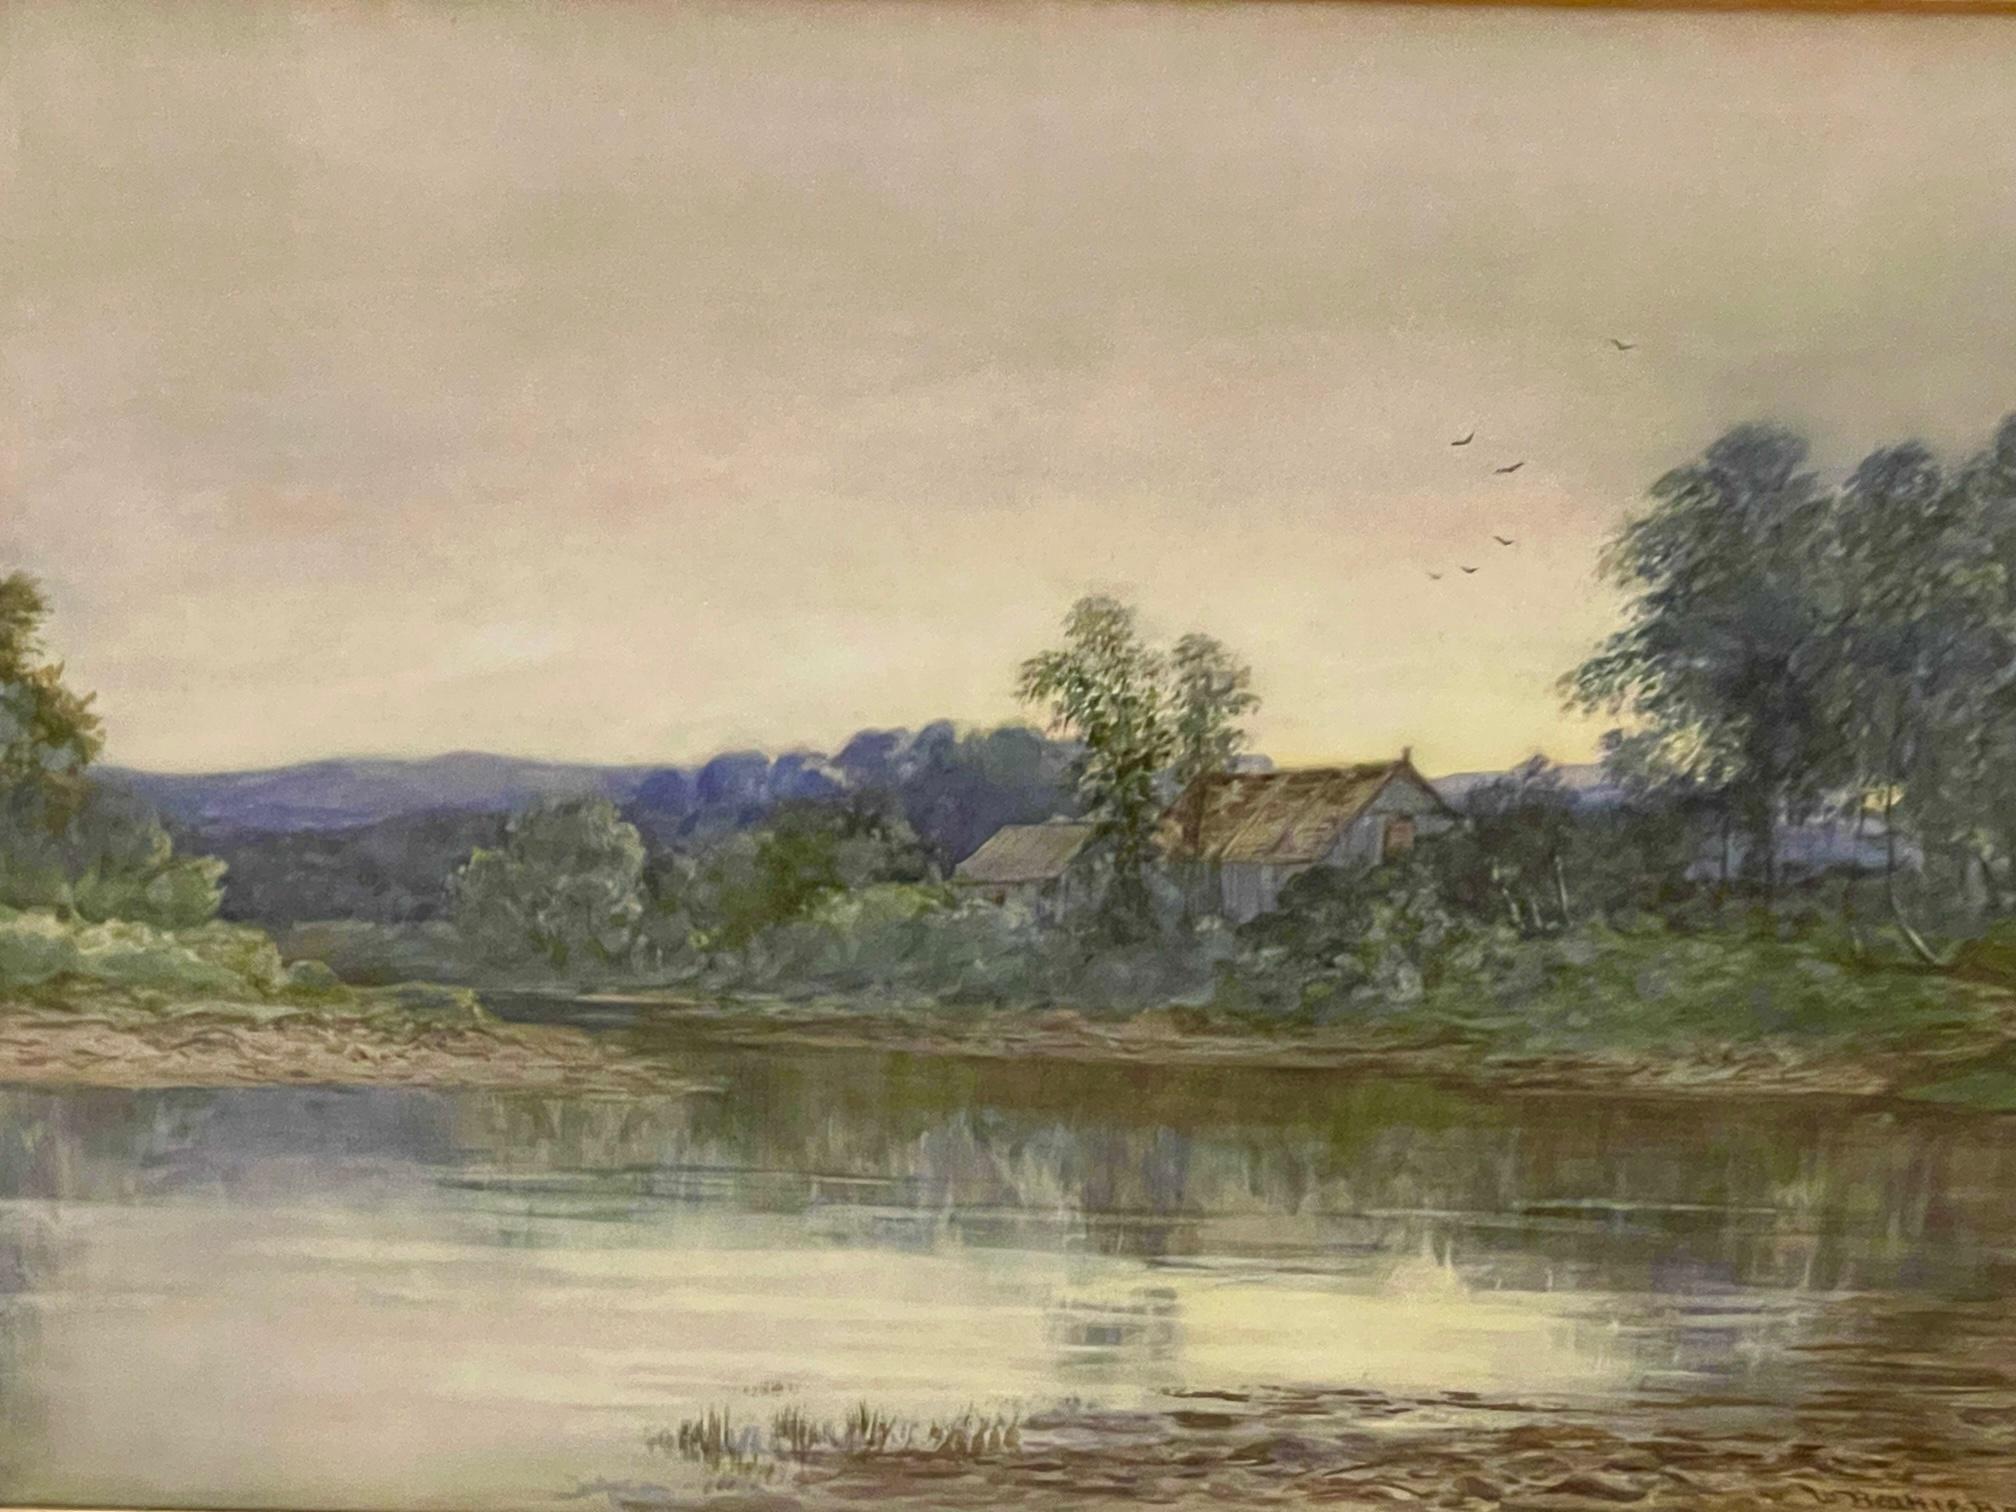 watercolor landscape painting